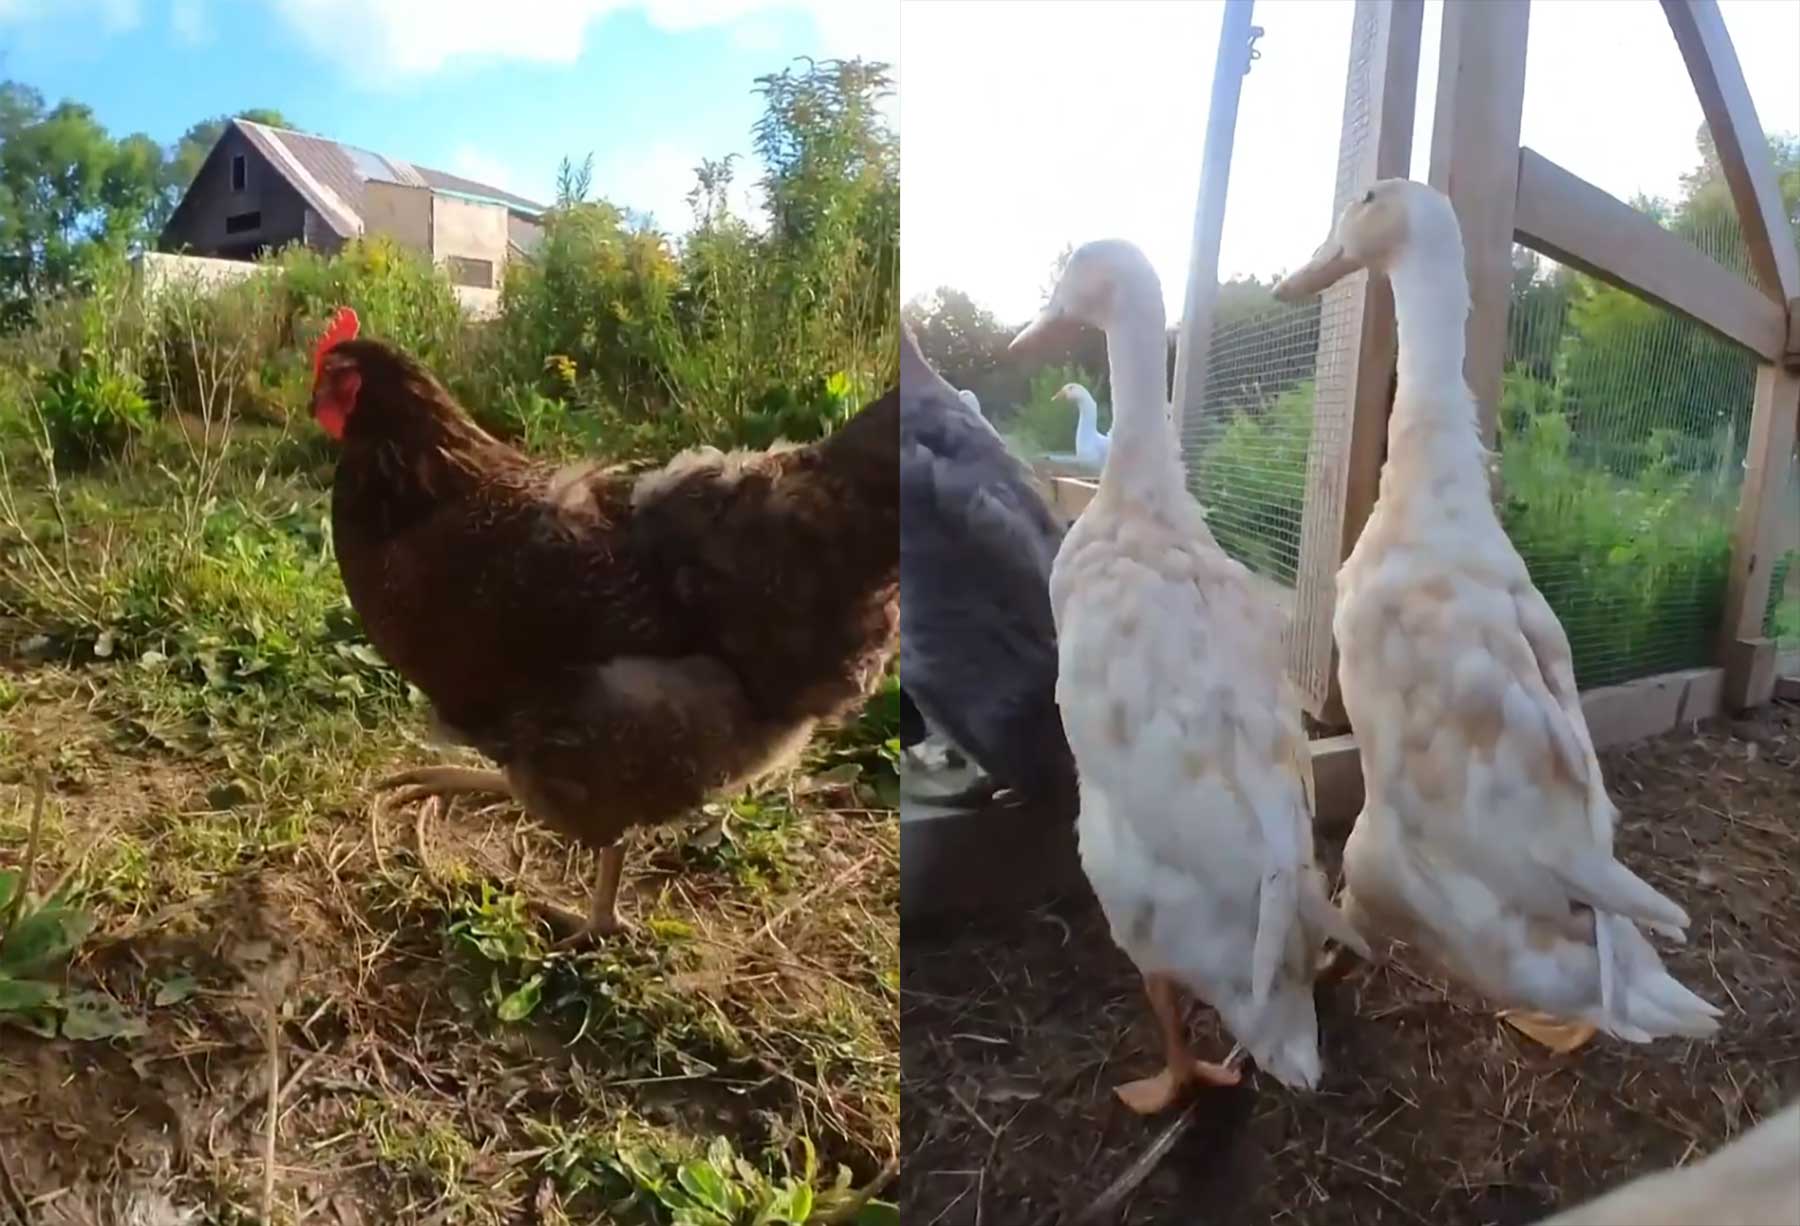 Mini-Kameras an Enten & Hühnern zeigen tierischen Alltag